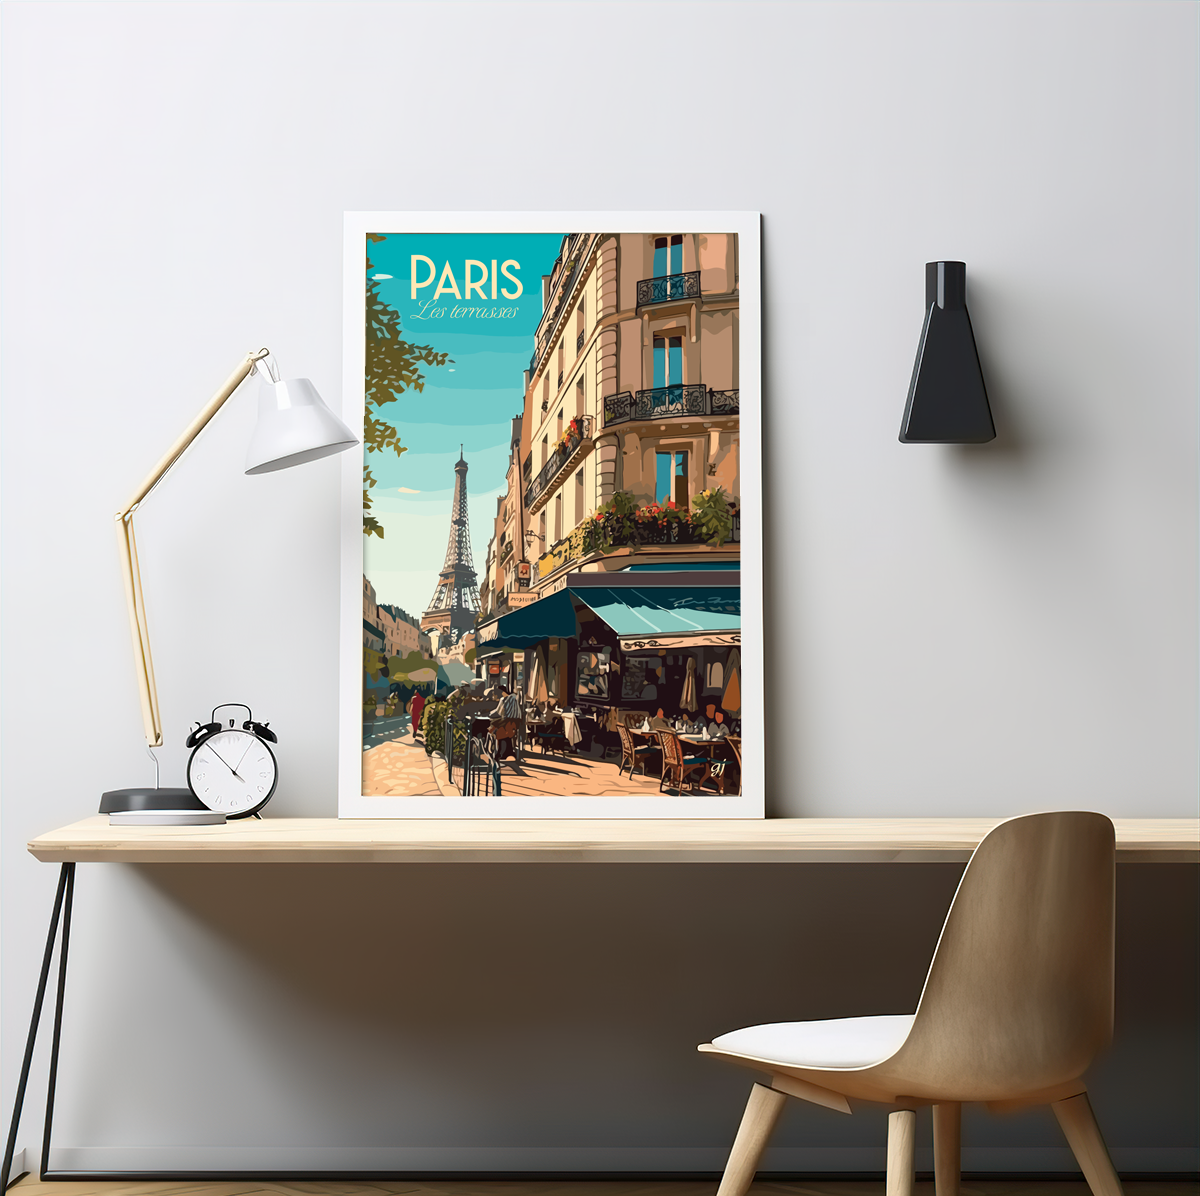 Paris poster by bon voyage design